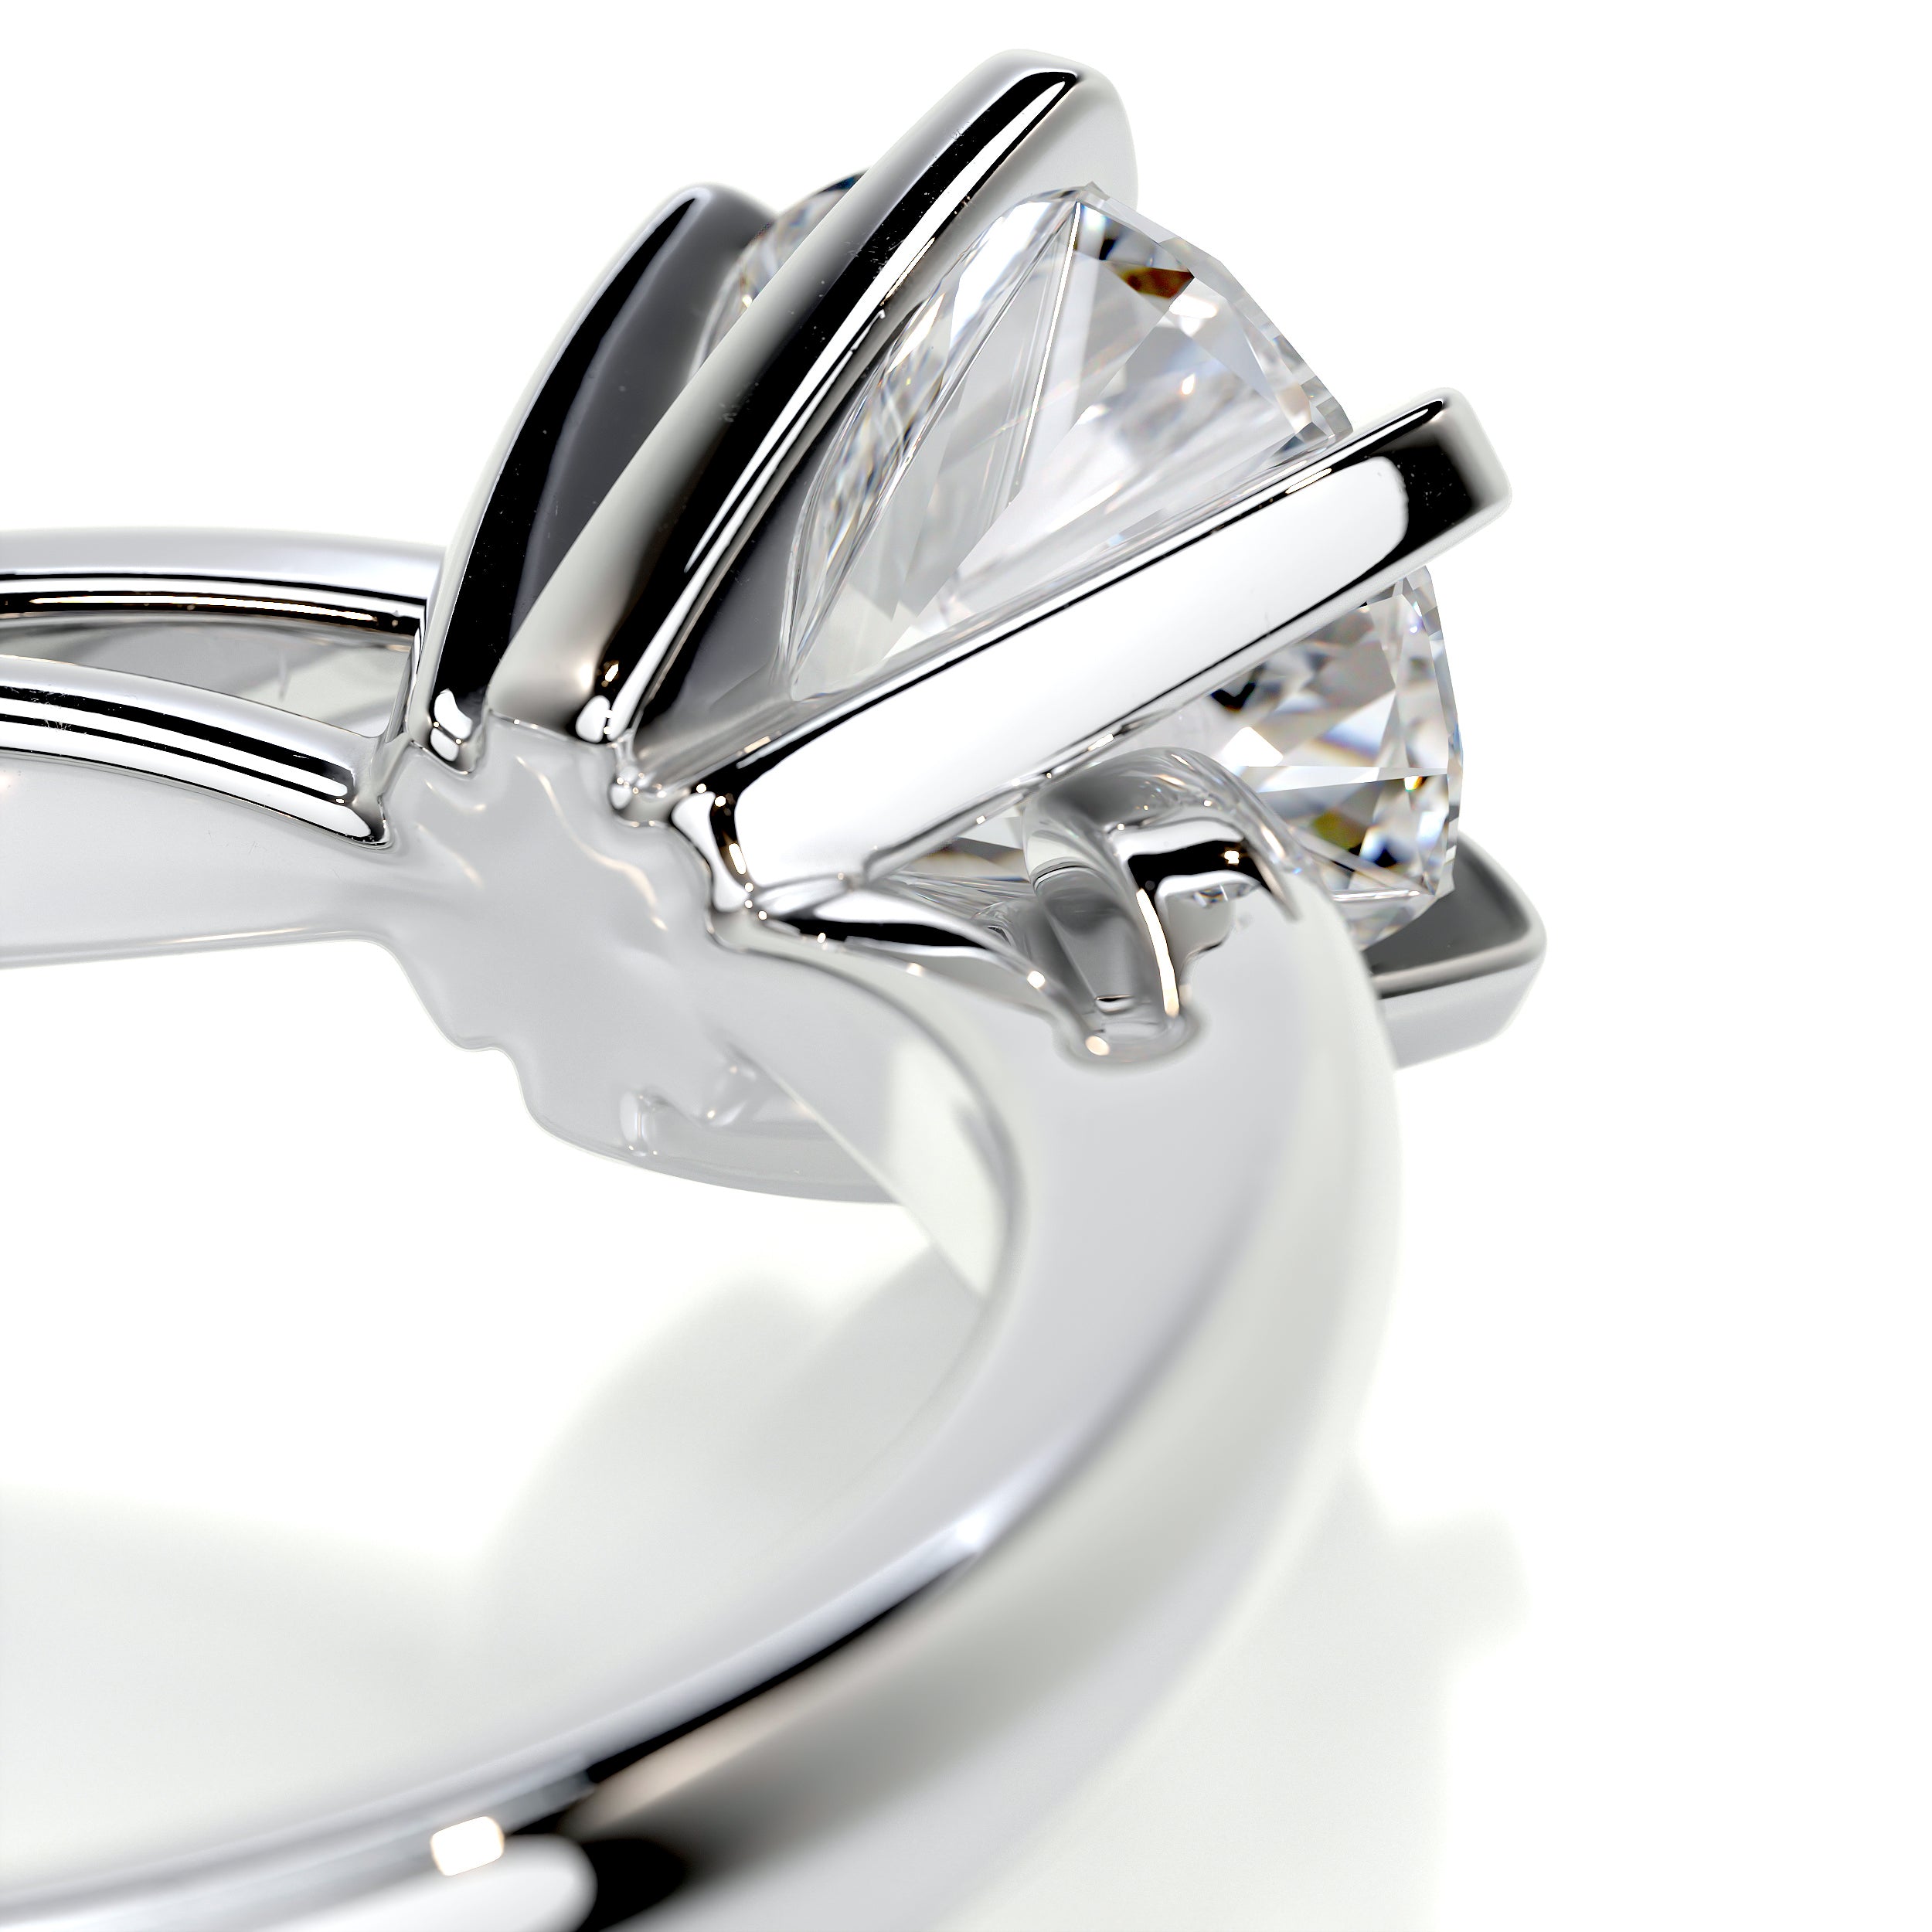 Talia Diamond Engagement Ring   (1 Carat) - Platinum